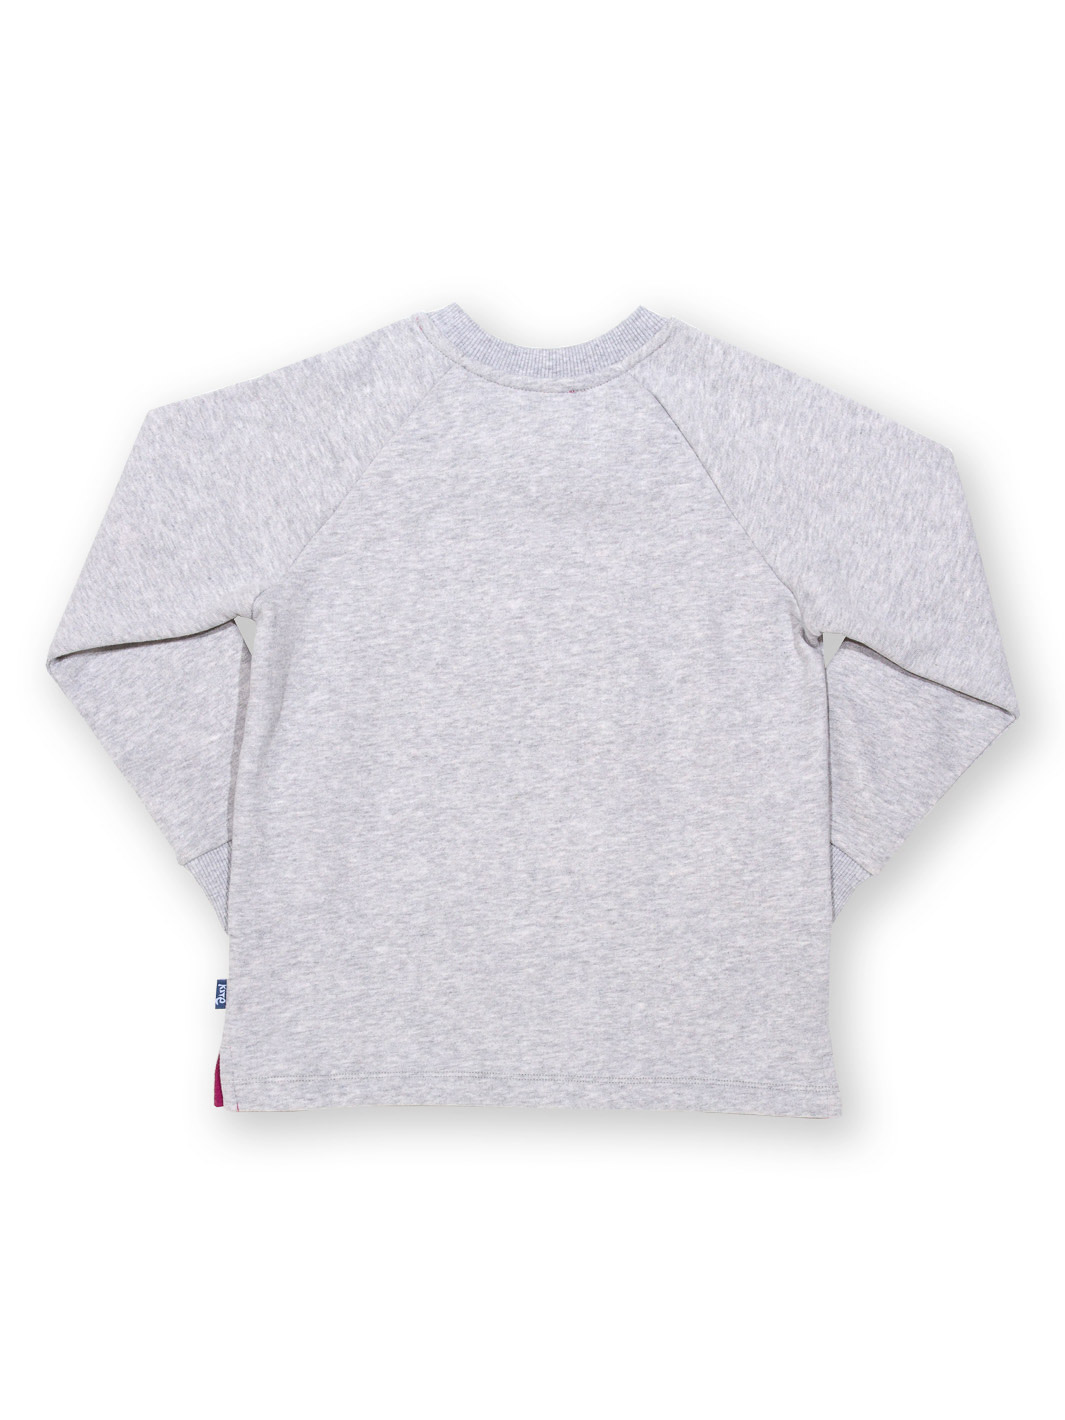 Sweatshirt Starburst grau von Kite Clothing